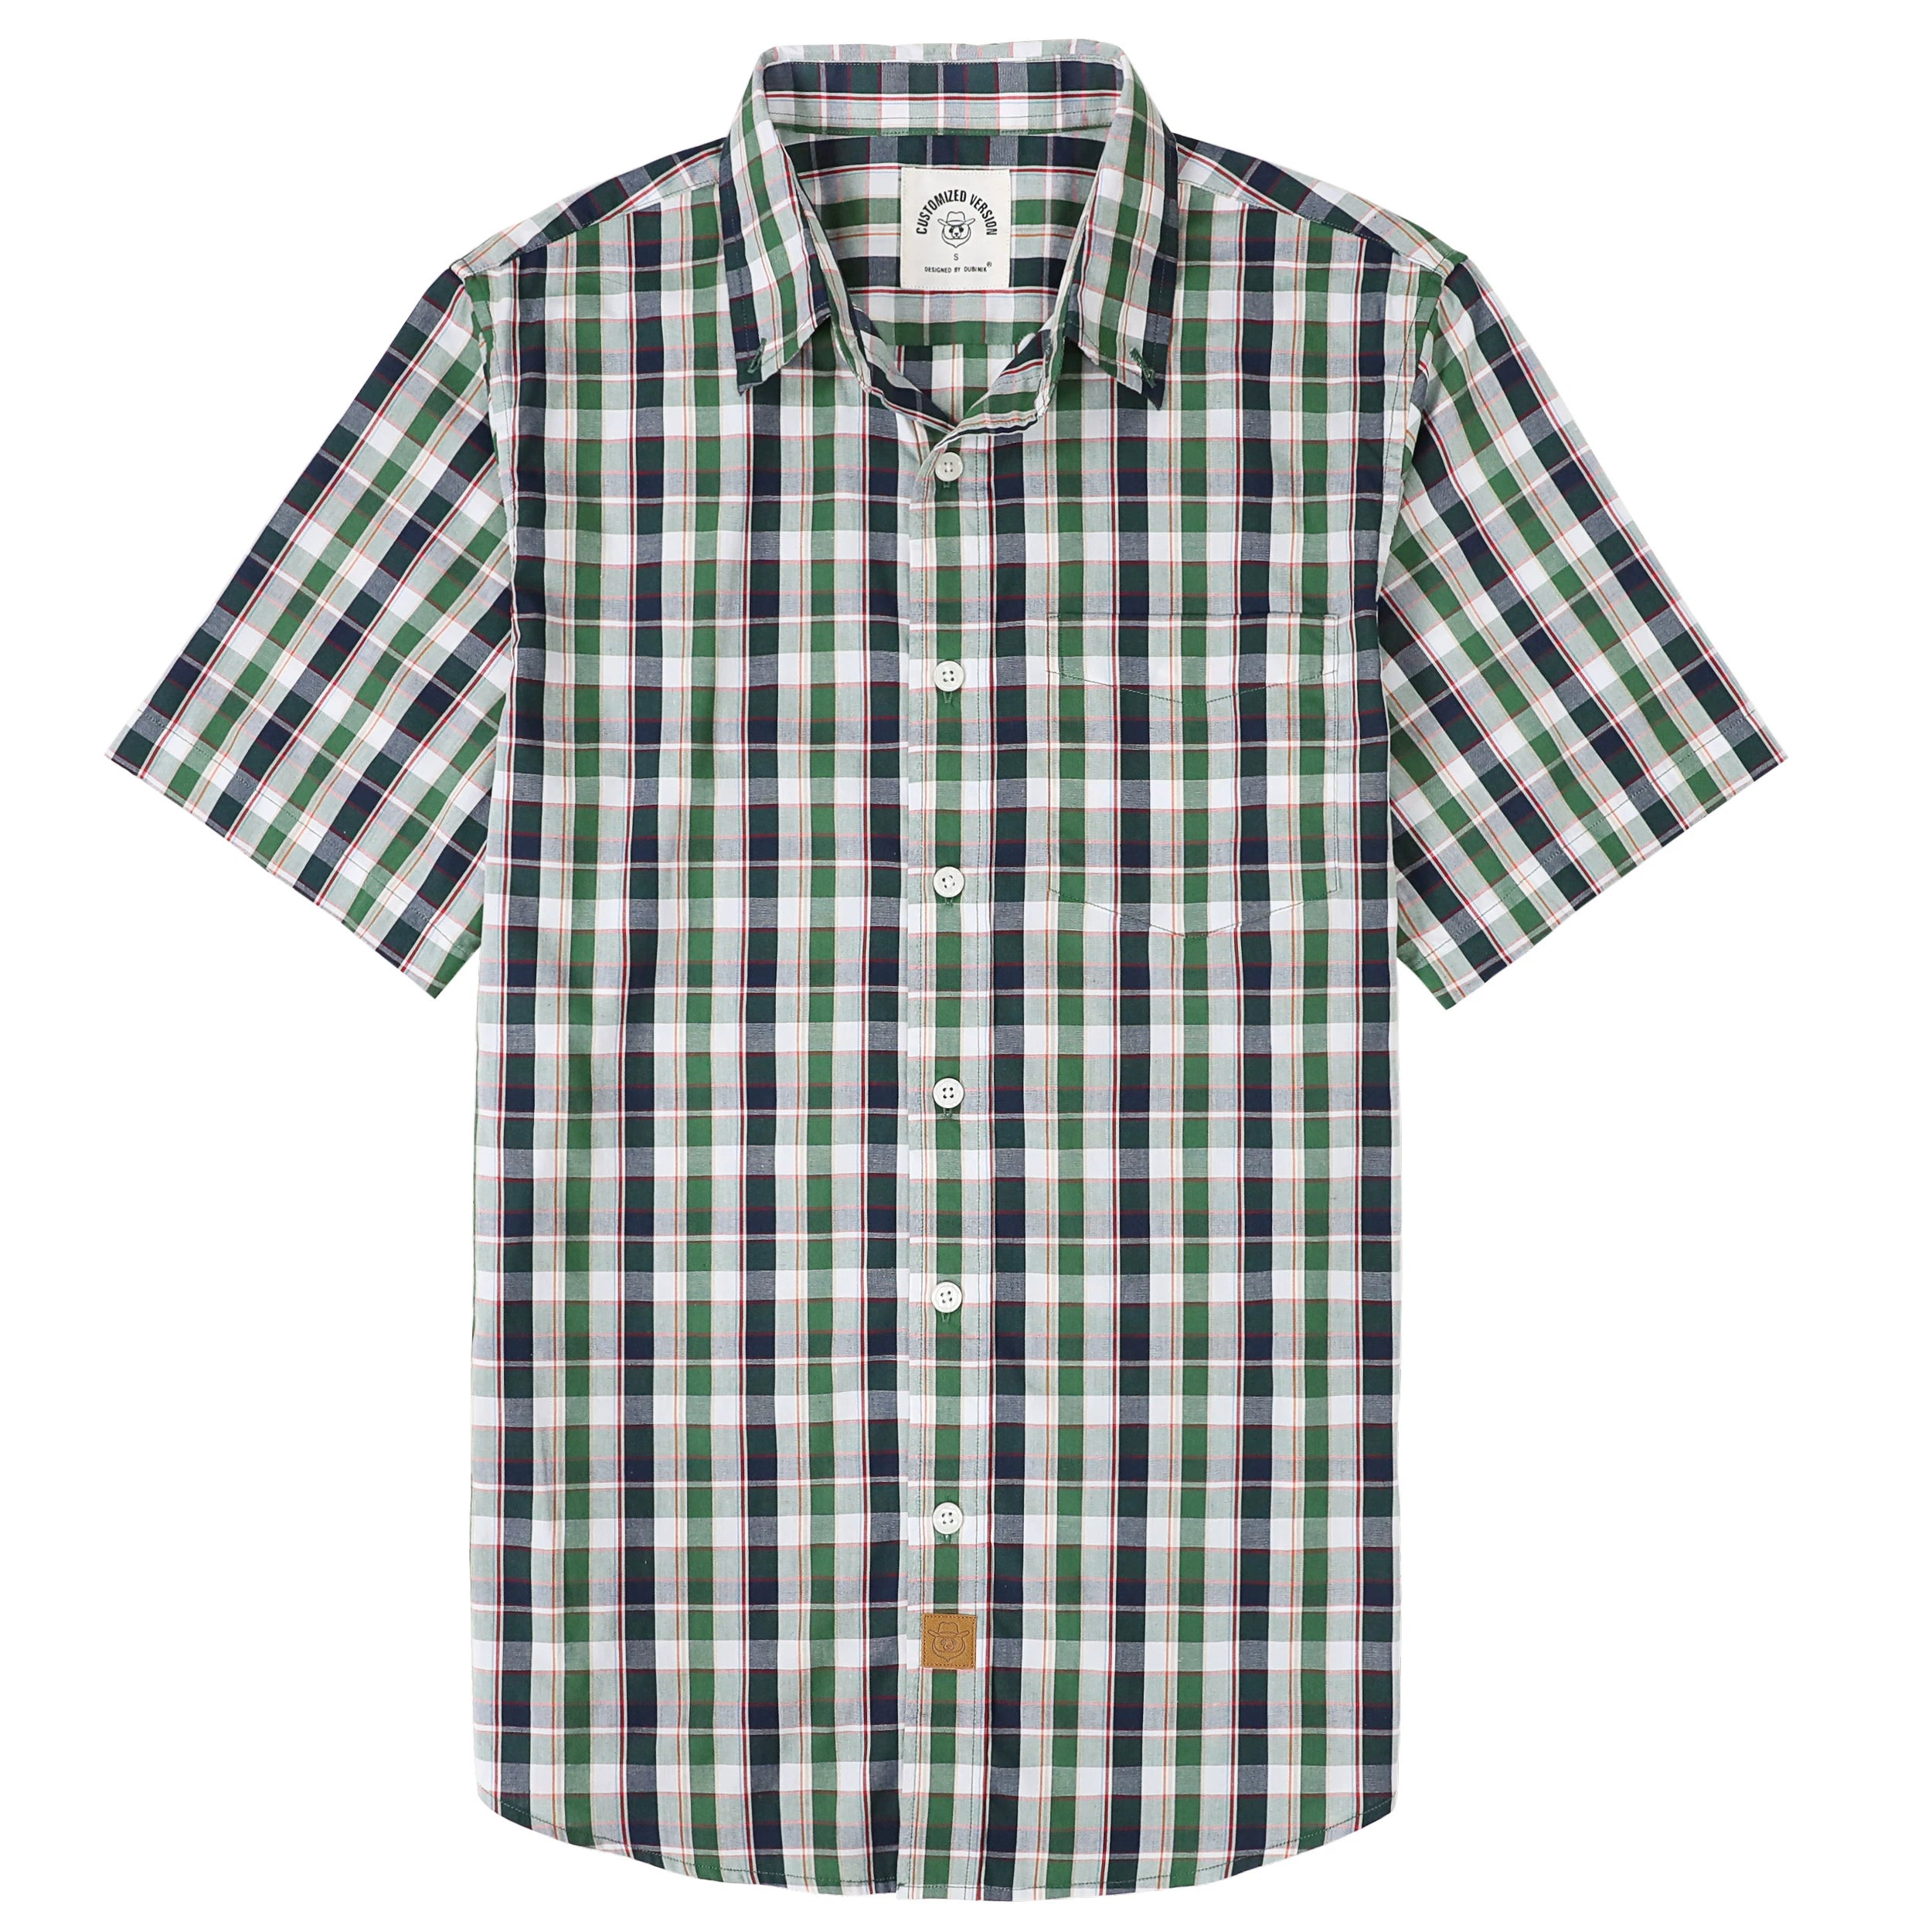 Dubinik® Mens Short Sleeve Button Down Shirts Summer Vintage Short Sleeve Button Down Men Lightweight Men's Casual Shirts#51002